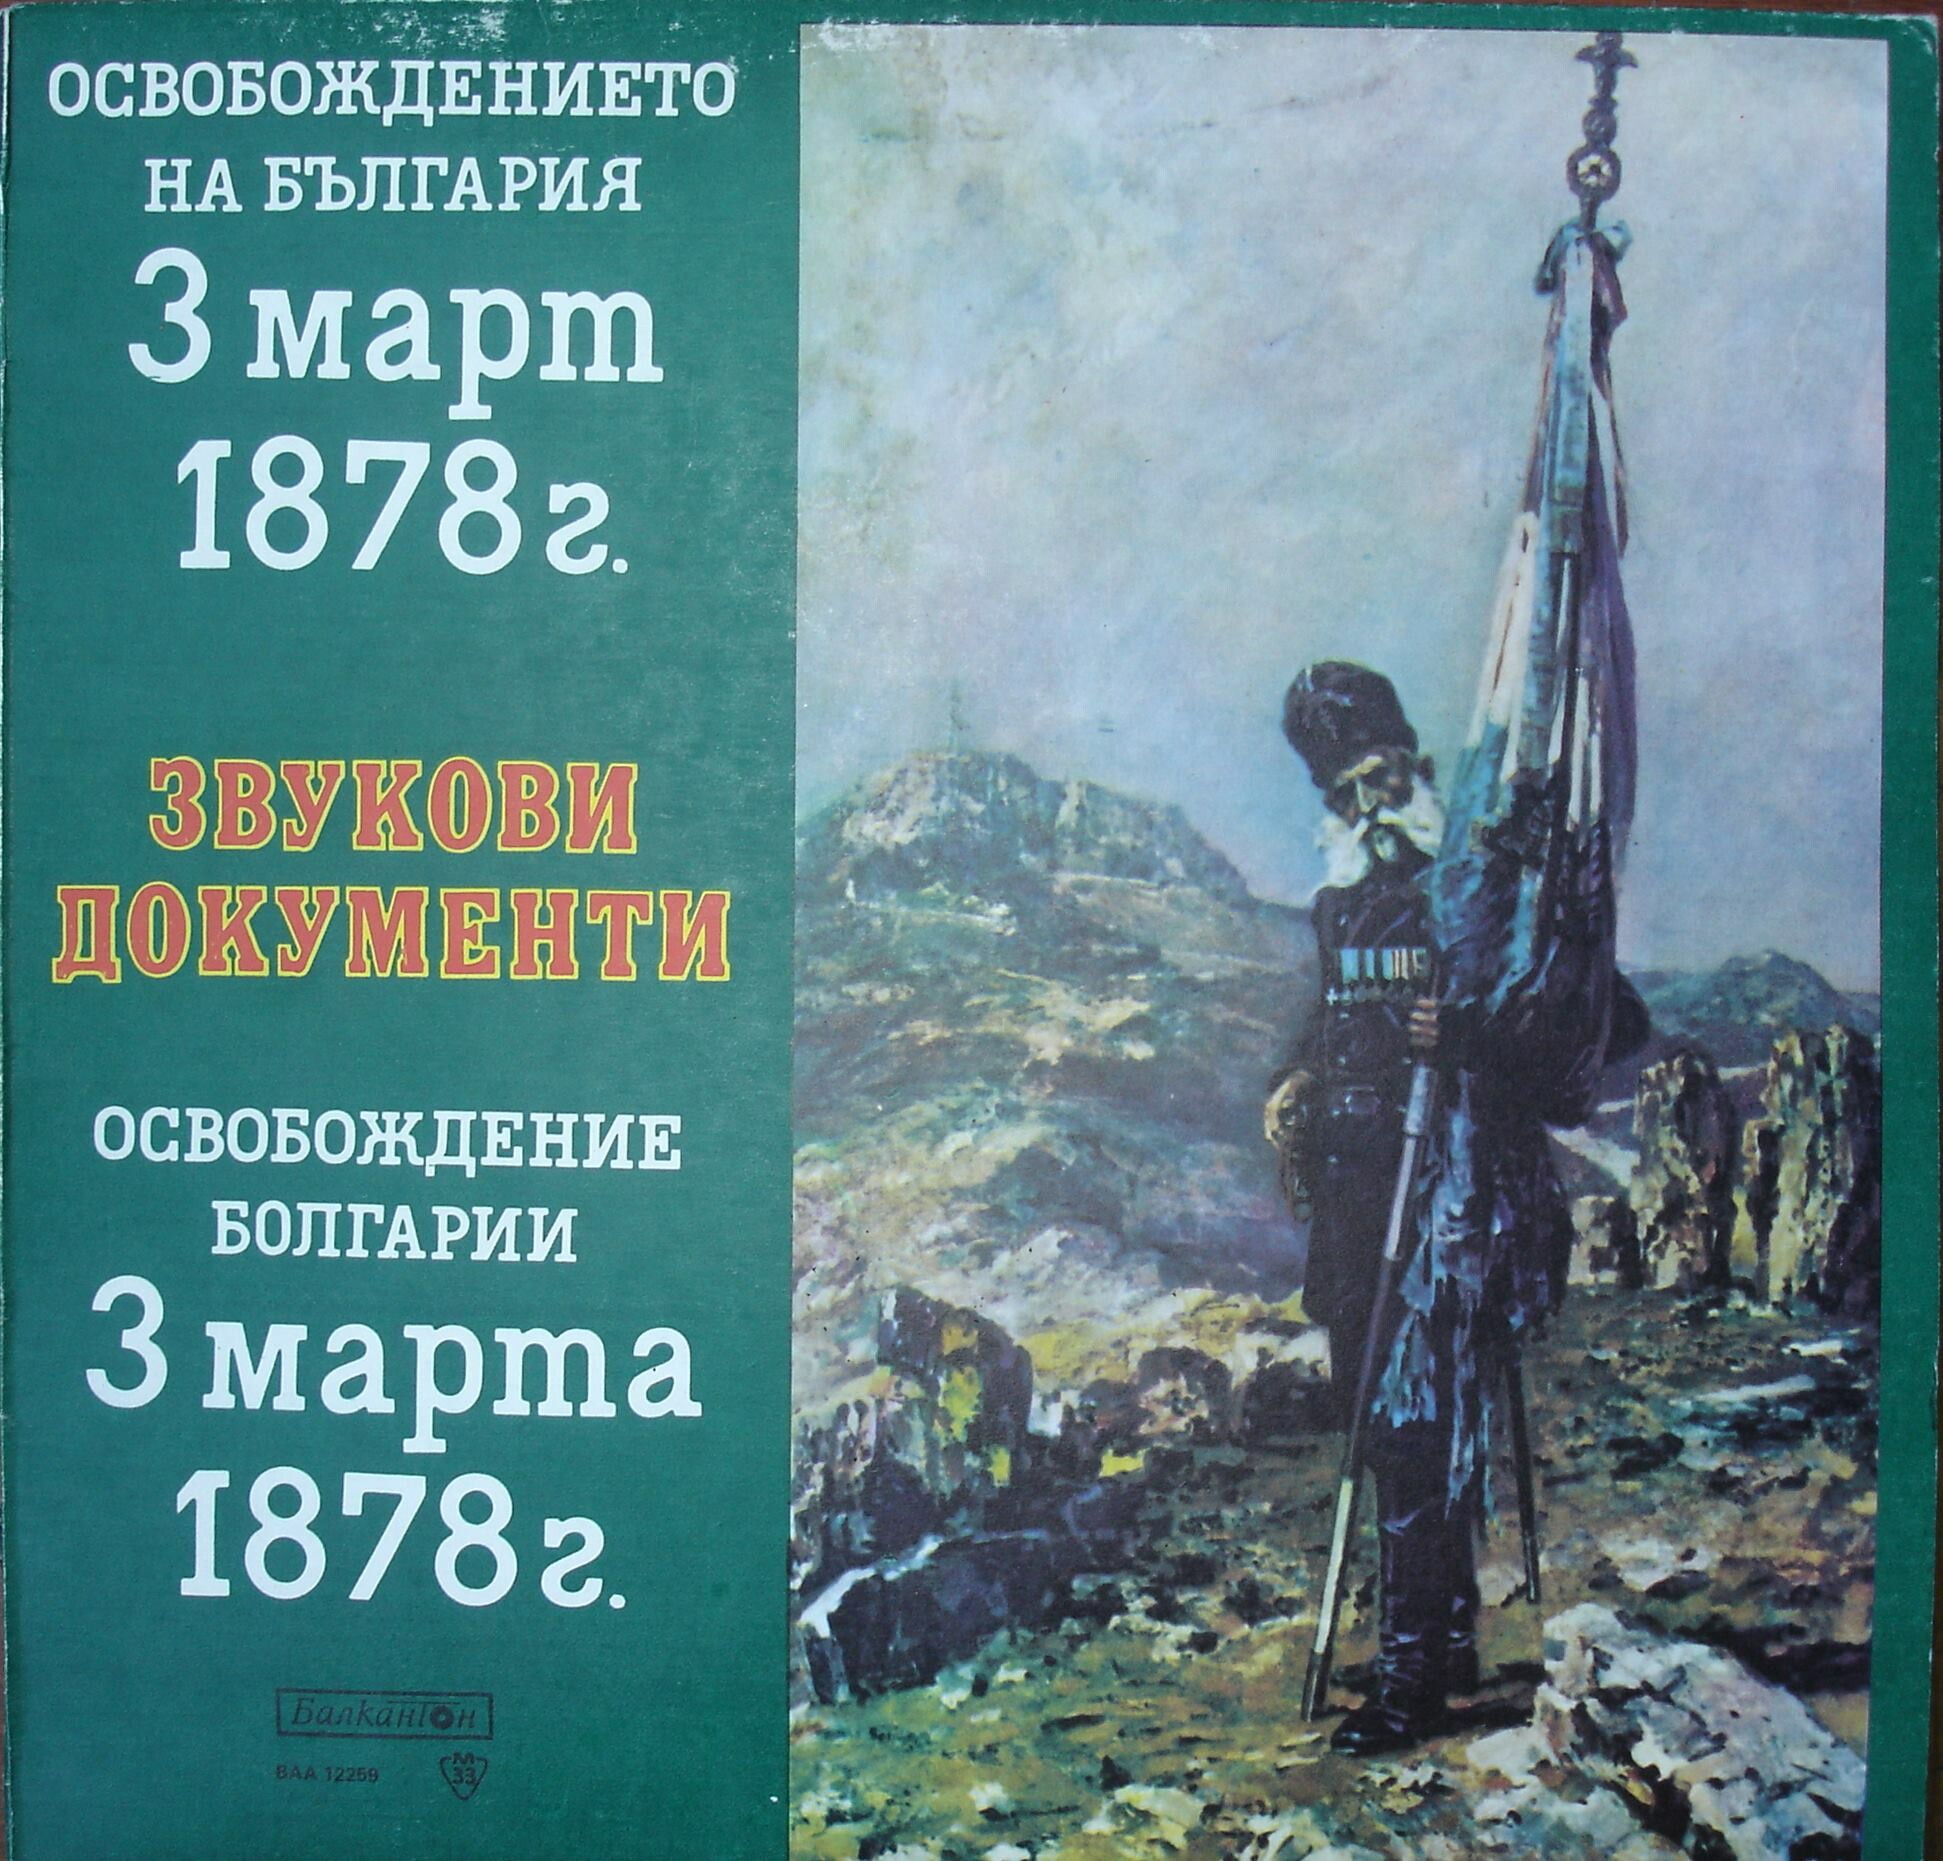 Освобождението на България 3 март 1878 г., звукови документи